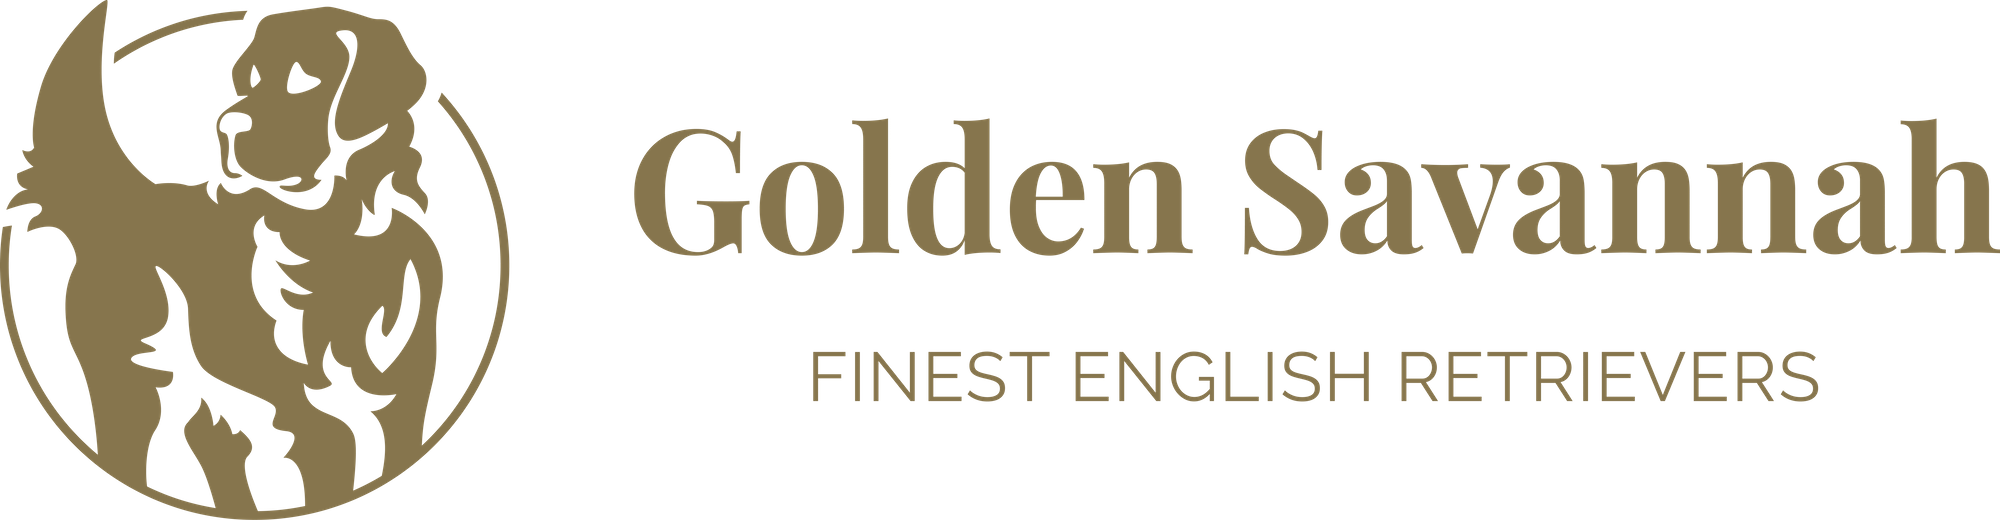 Golden Savannah - English Golden Retrievers